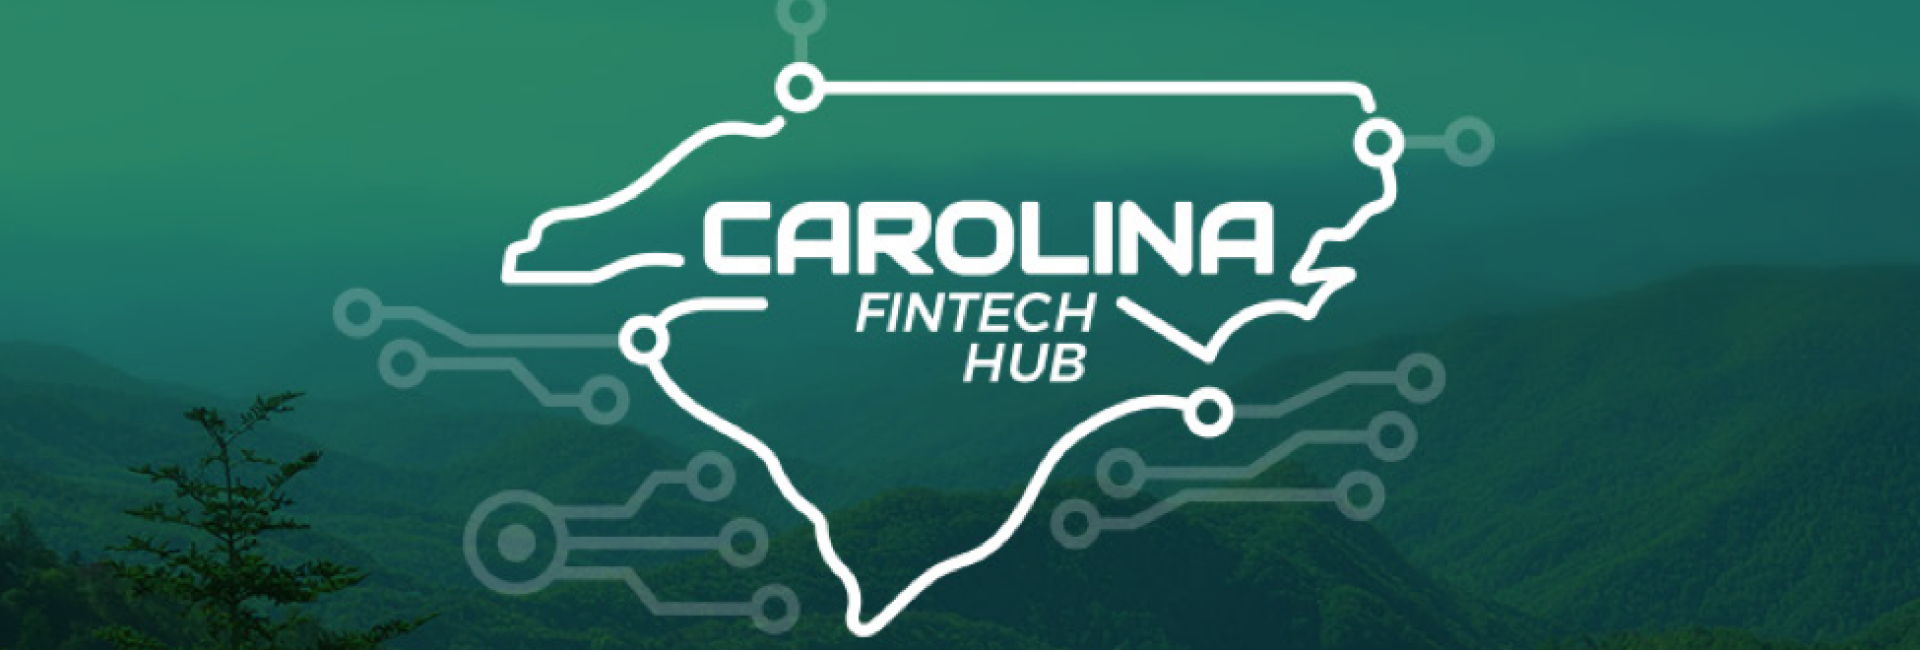 Envestnet | Yodlee Supports Carolina Fintech Hub's Digital TopHack Hackathon